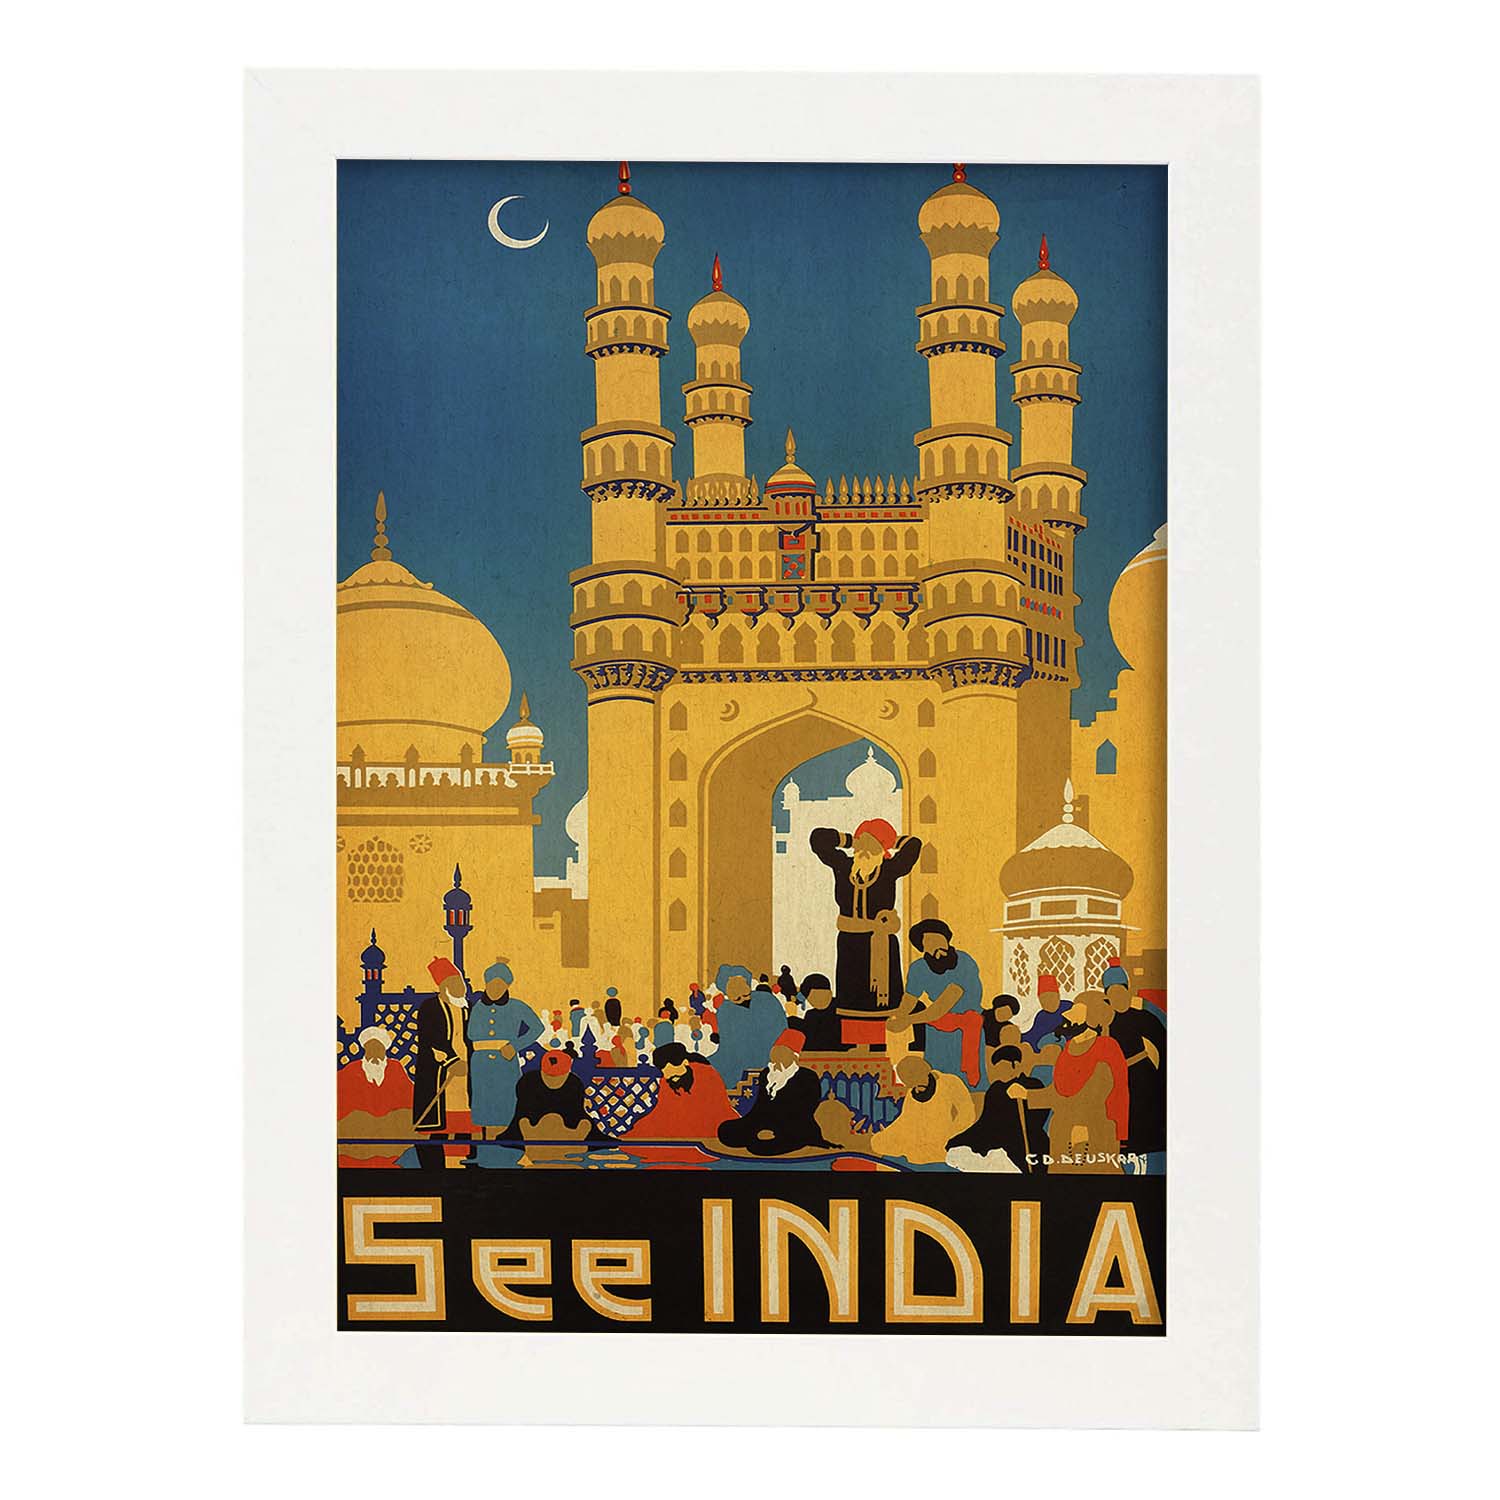 Poster vintage. Cartel vintage de Asia. Templo de India.-Artwork-Nacnic-A4-Marco Blanco-Nacnic Estudio SL